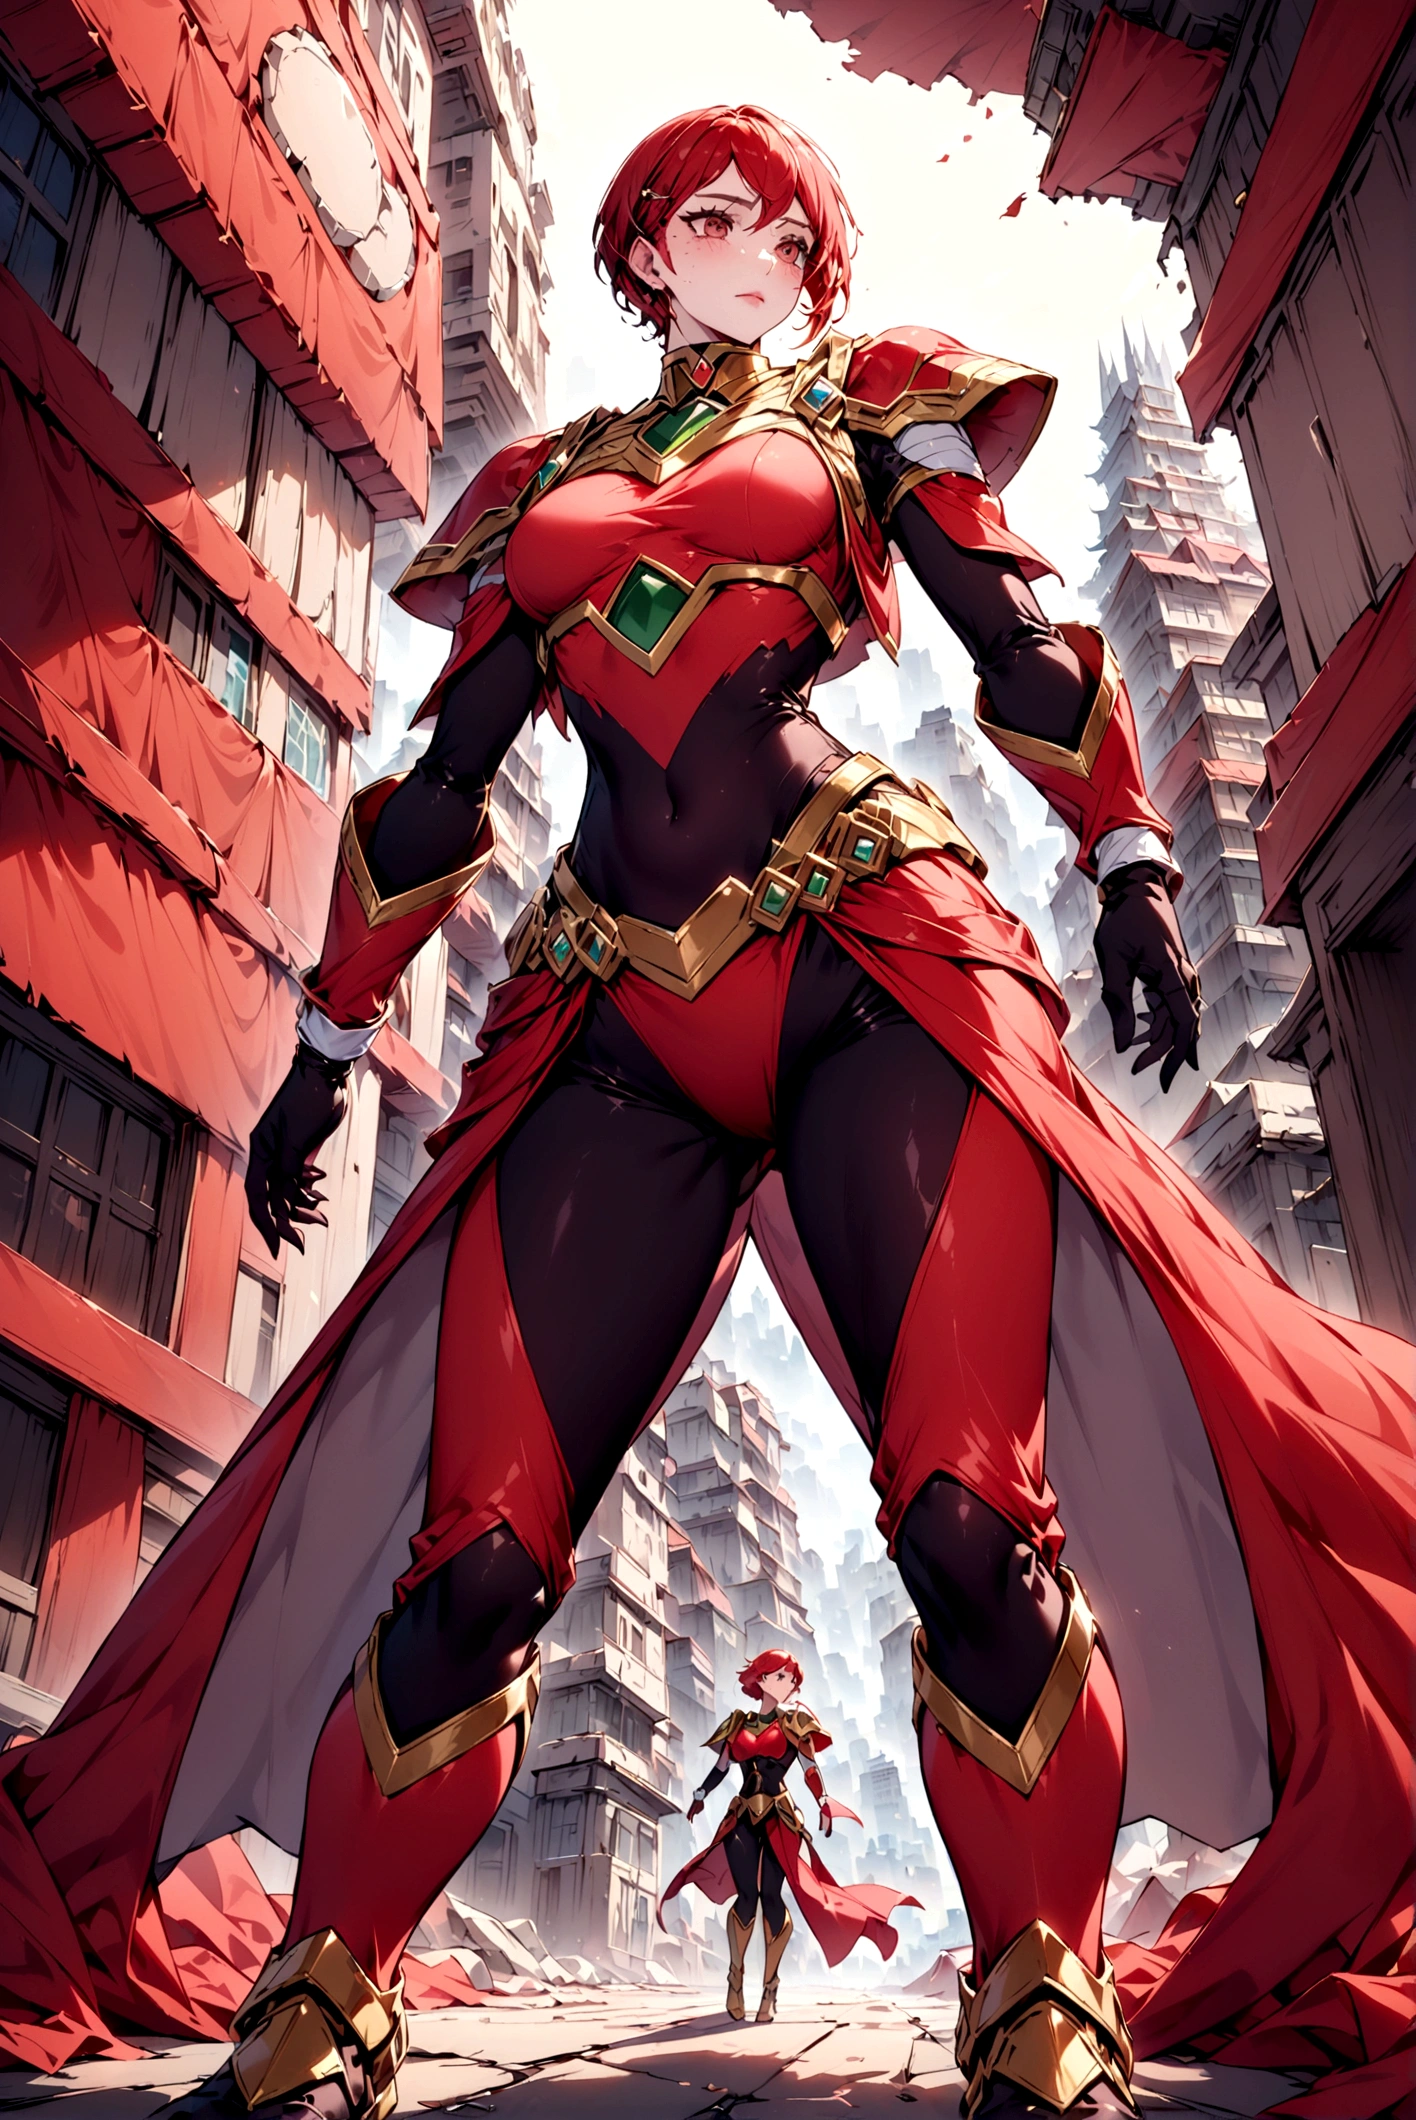 Es könnte ein Charakter mit einem Design ähnlich dem roten Power Ranger mit einer zerstörten Stadt dahinter erstellt werden 